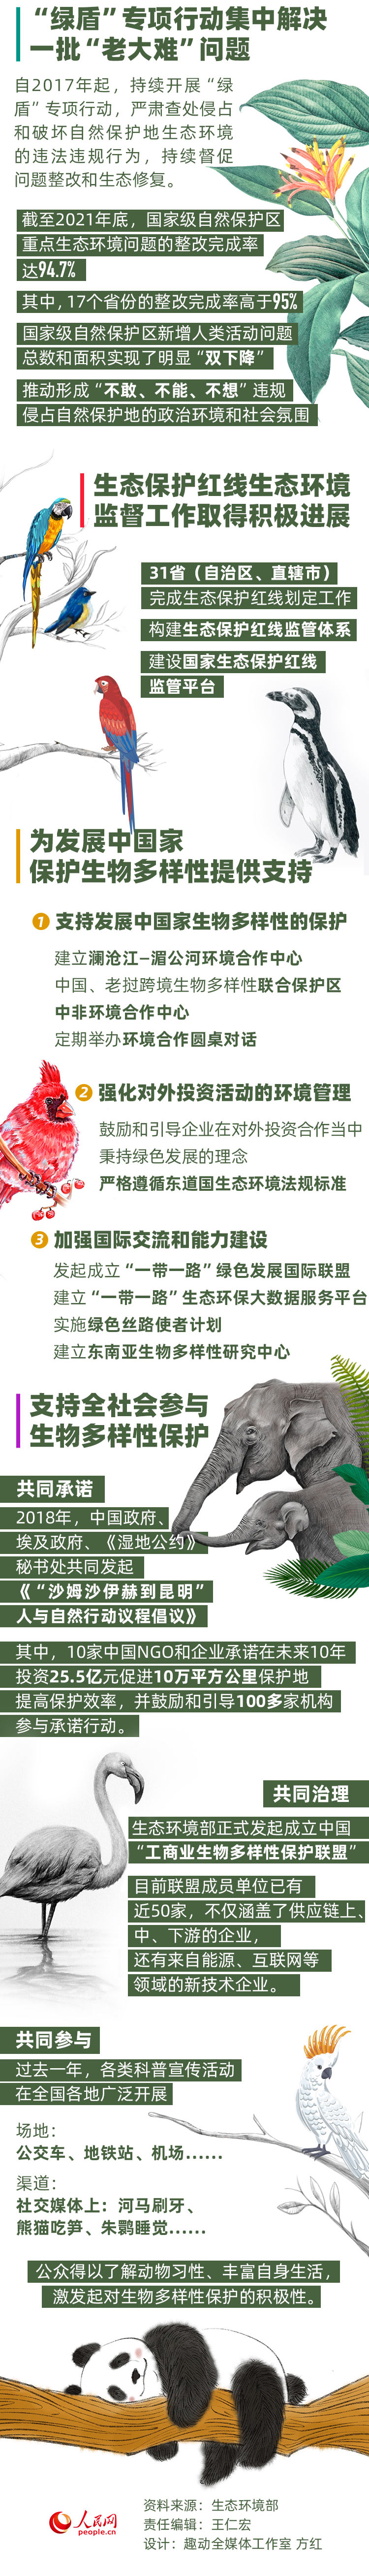 多樣生物 共同守護 數讀生物多樣性保護的中國實踐